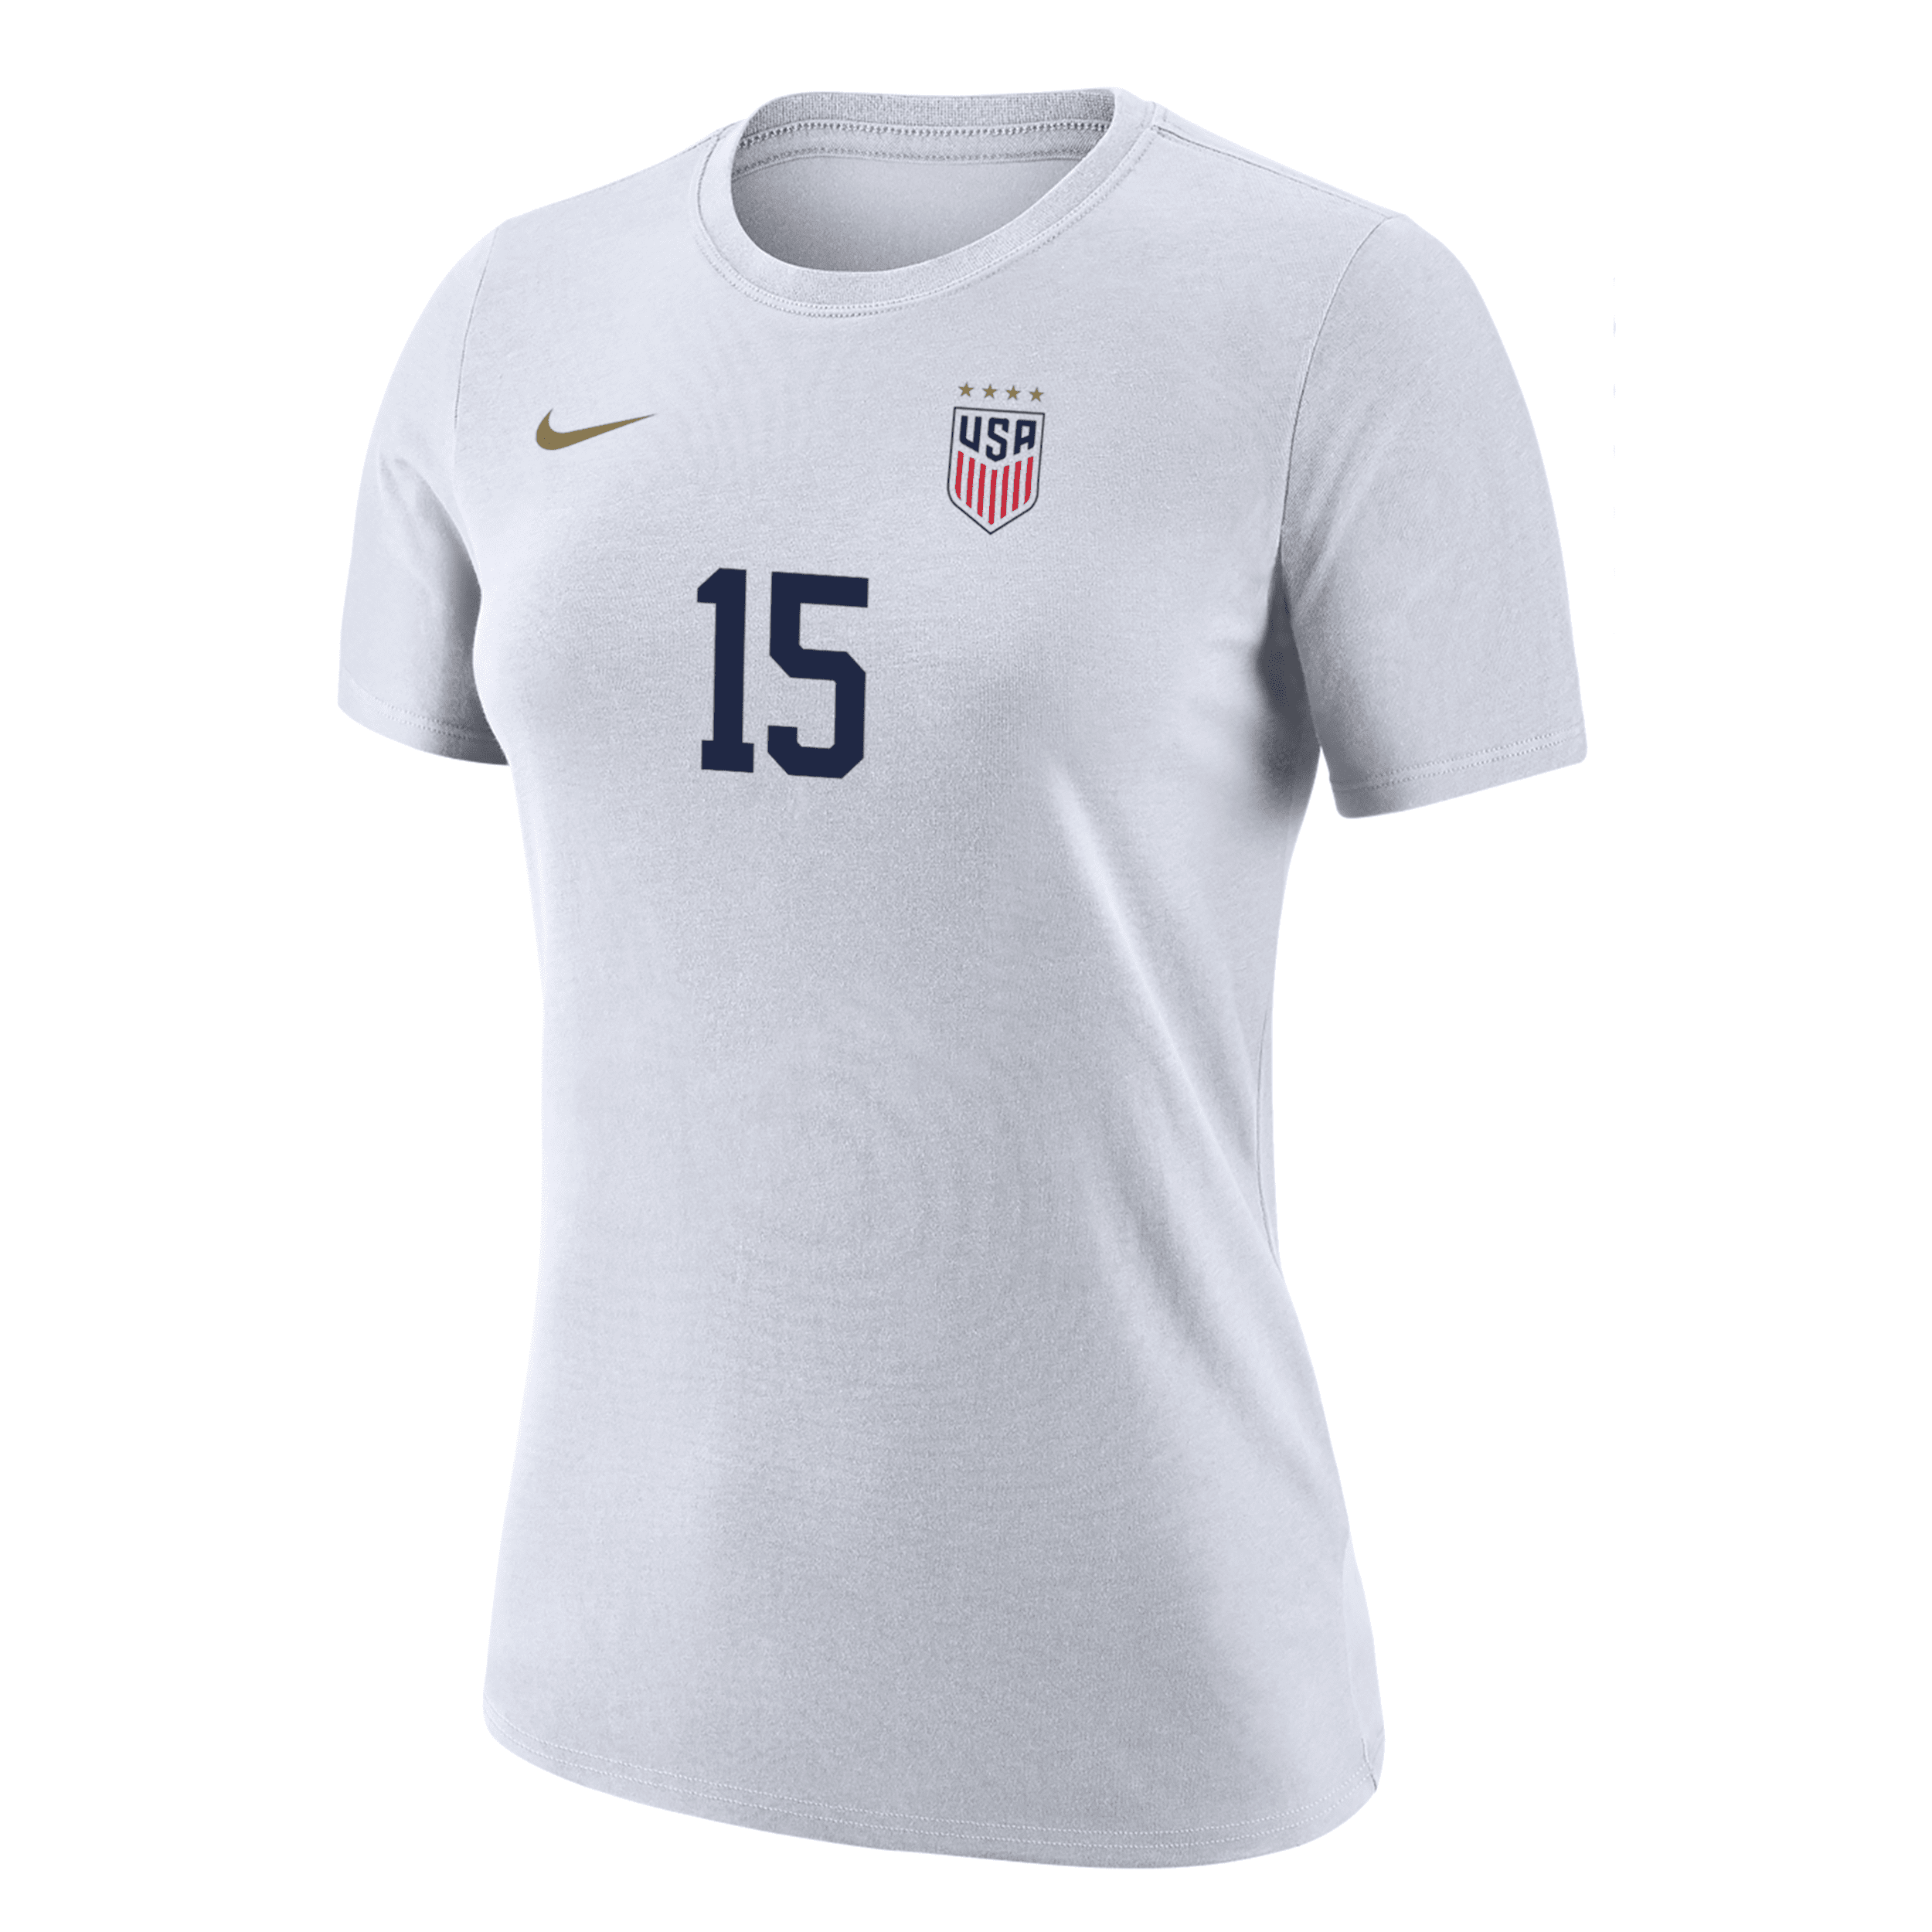 Nike Megan Rapinoe Uswnt  Women's Soccer T-shirt In White